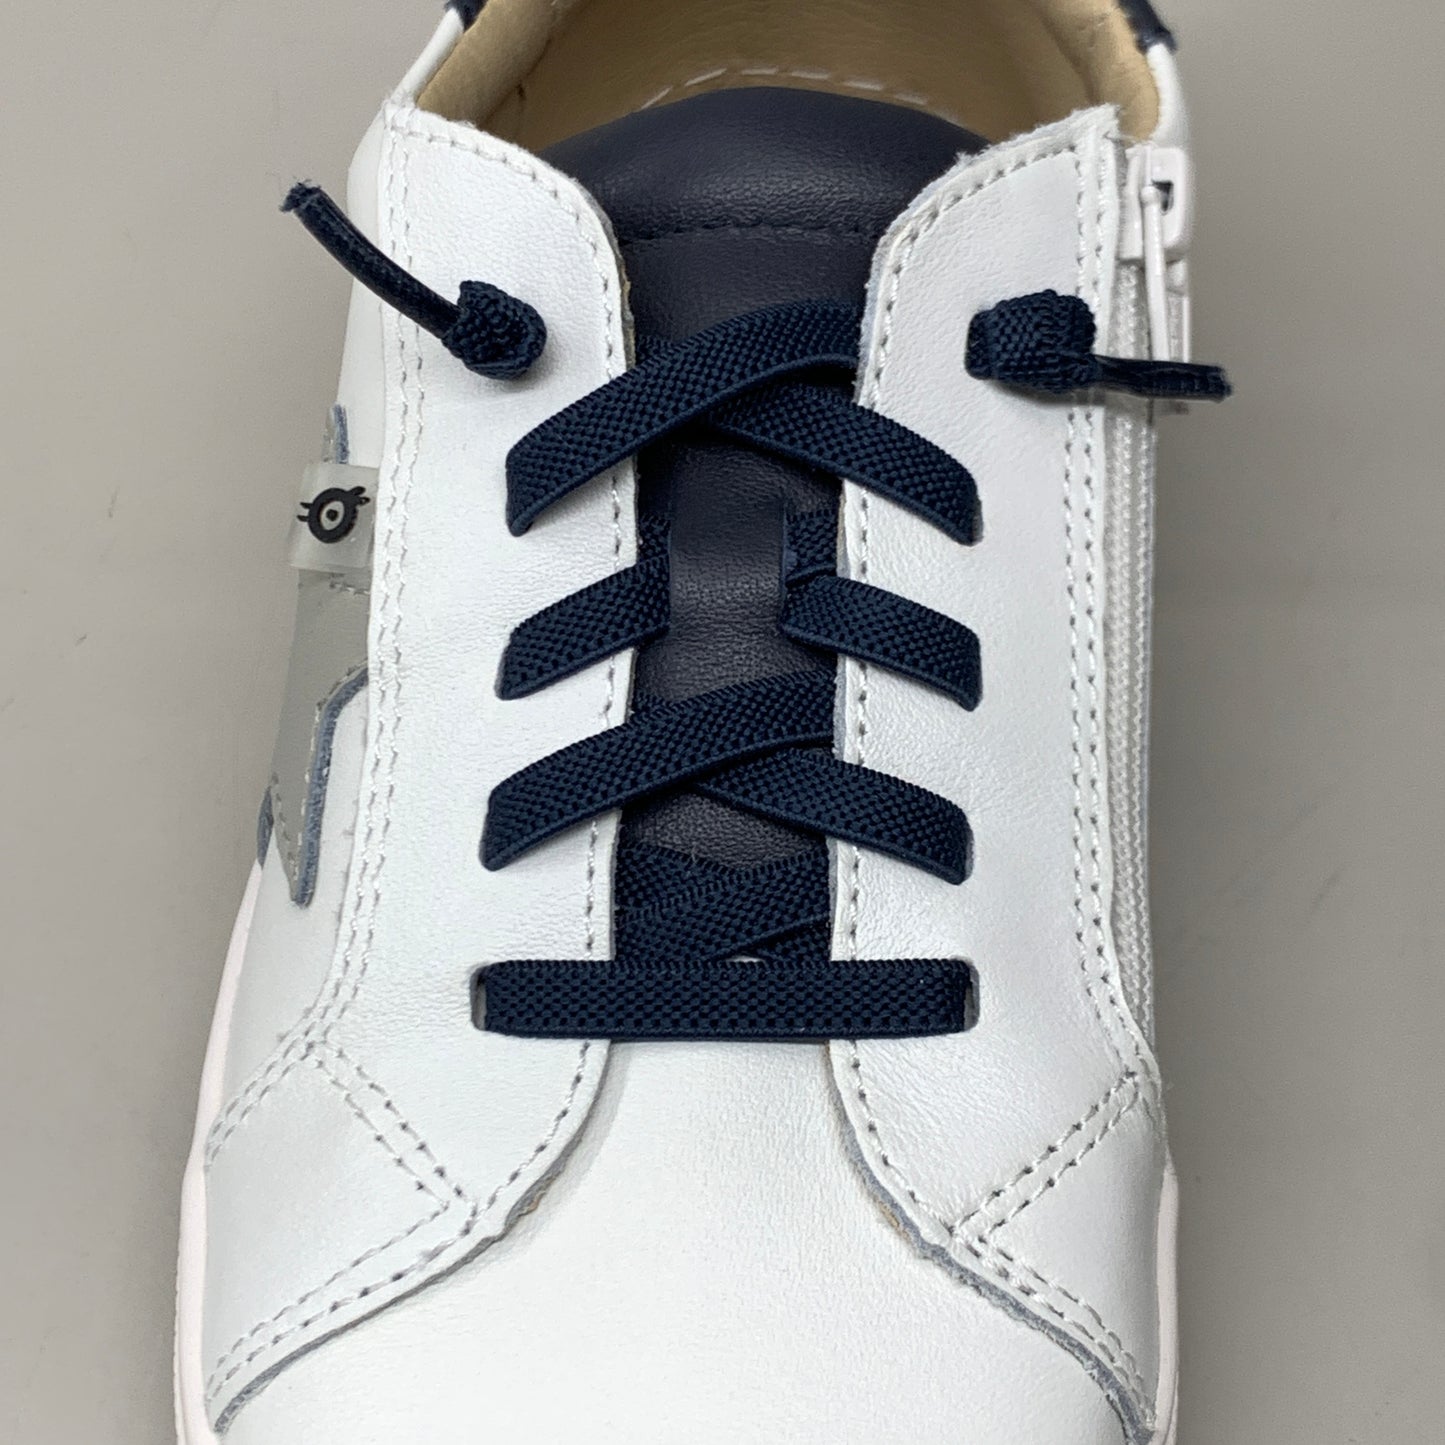 OLD SOLES Comet Runner Sneakers Kid’s Sz 9.5 EU 26 Snow/Navy/Gris #6149